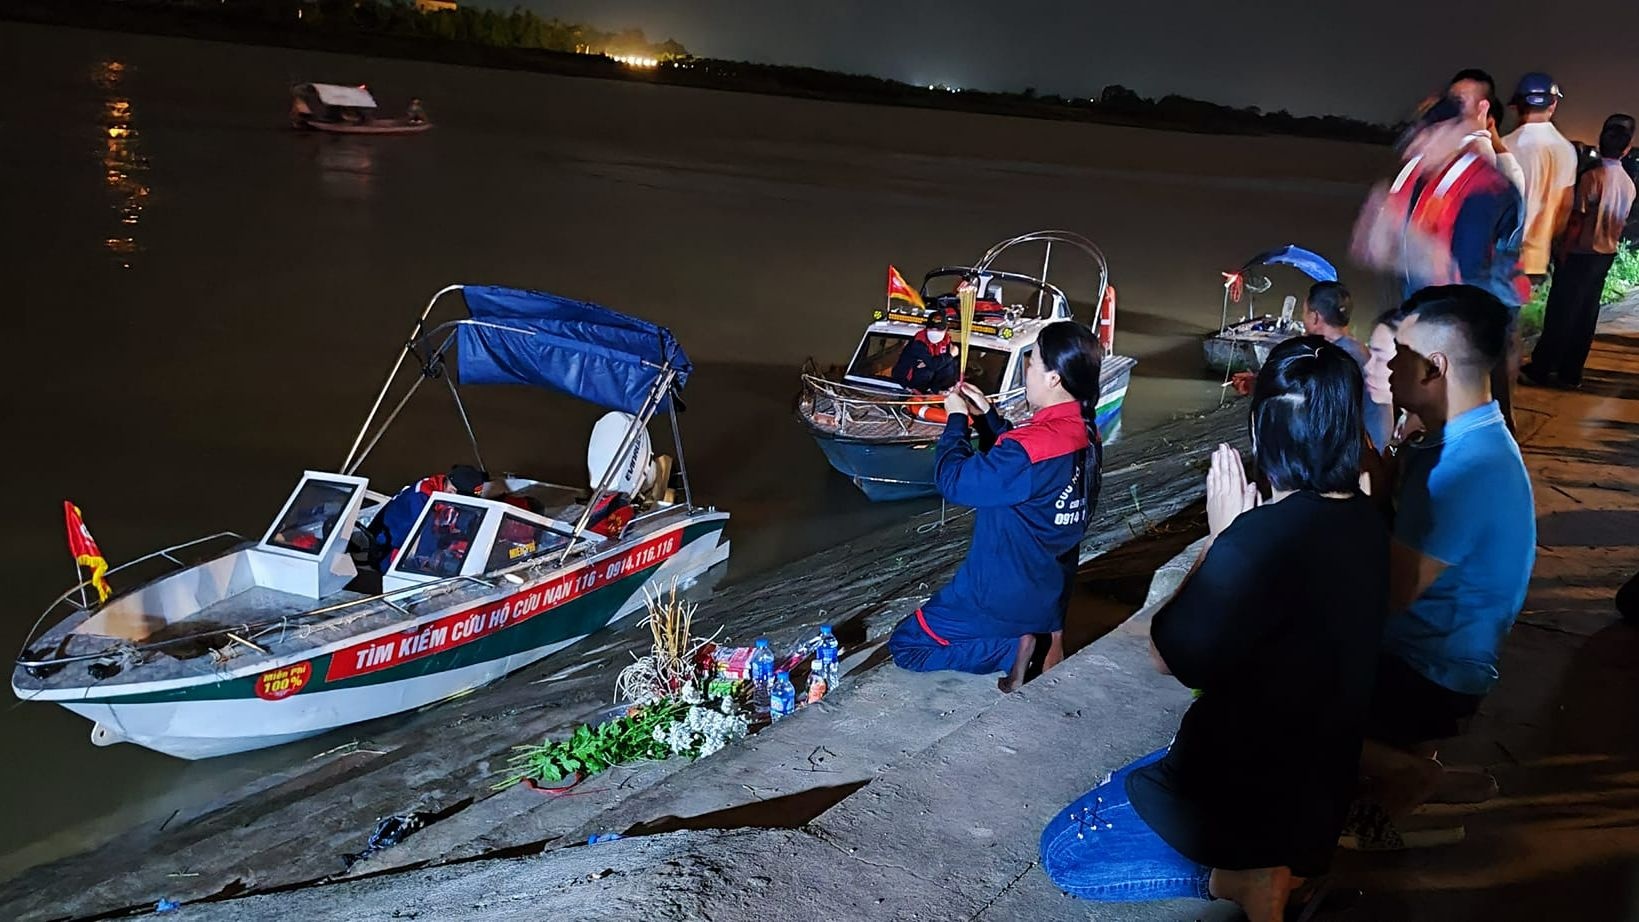 Đã tìm thấy 4 thi thể trong vụ mất tích trên sông Đào: Người mẹ tử nạn đúng vào ngày giỗ con trai - Ảnh 2